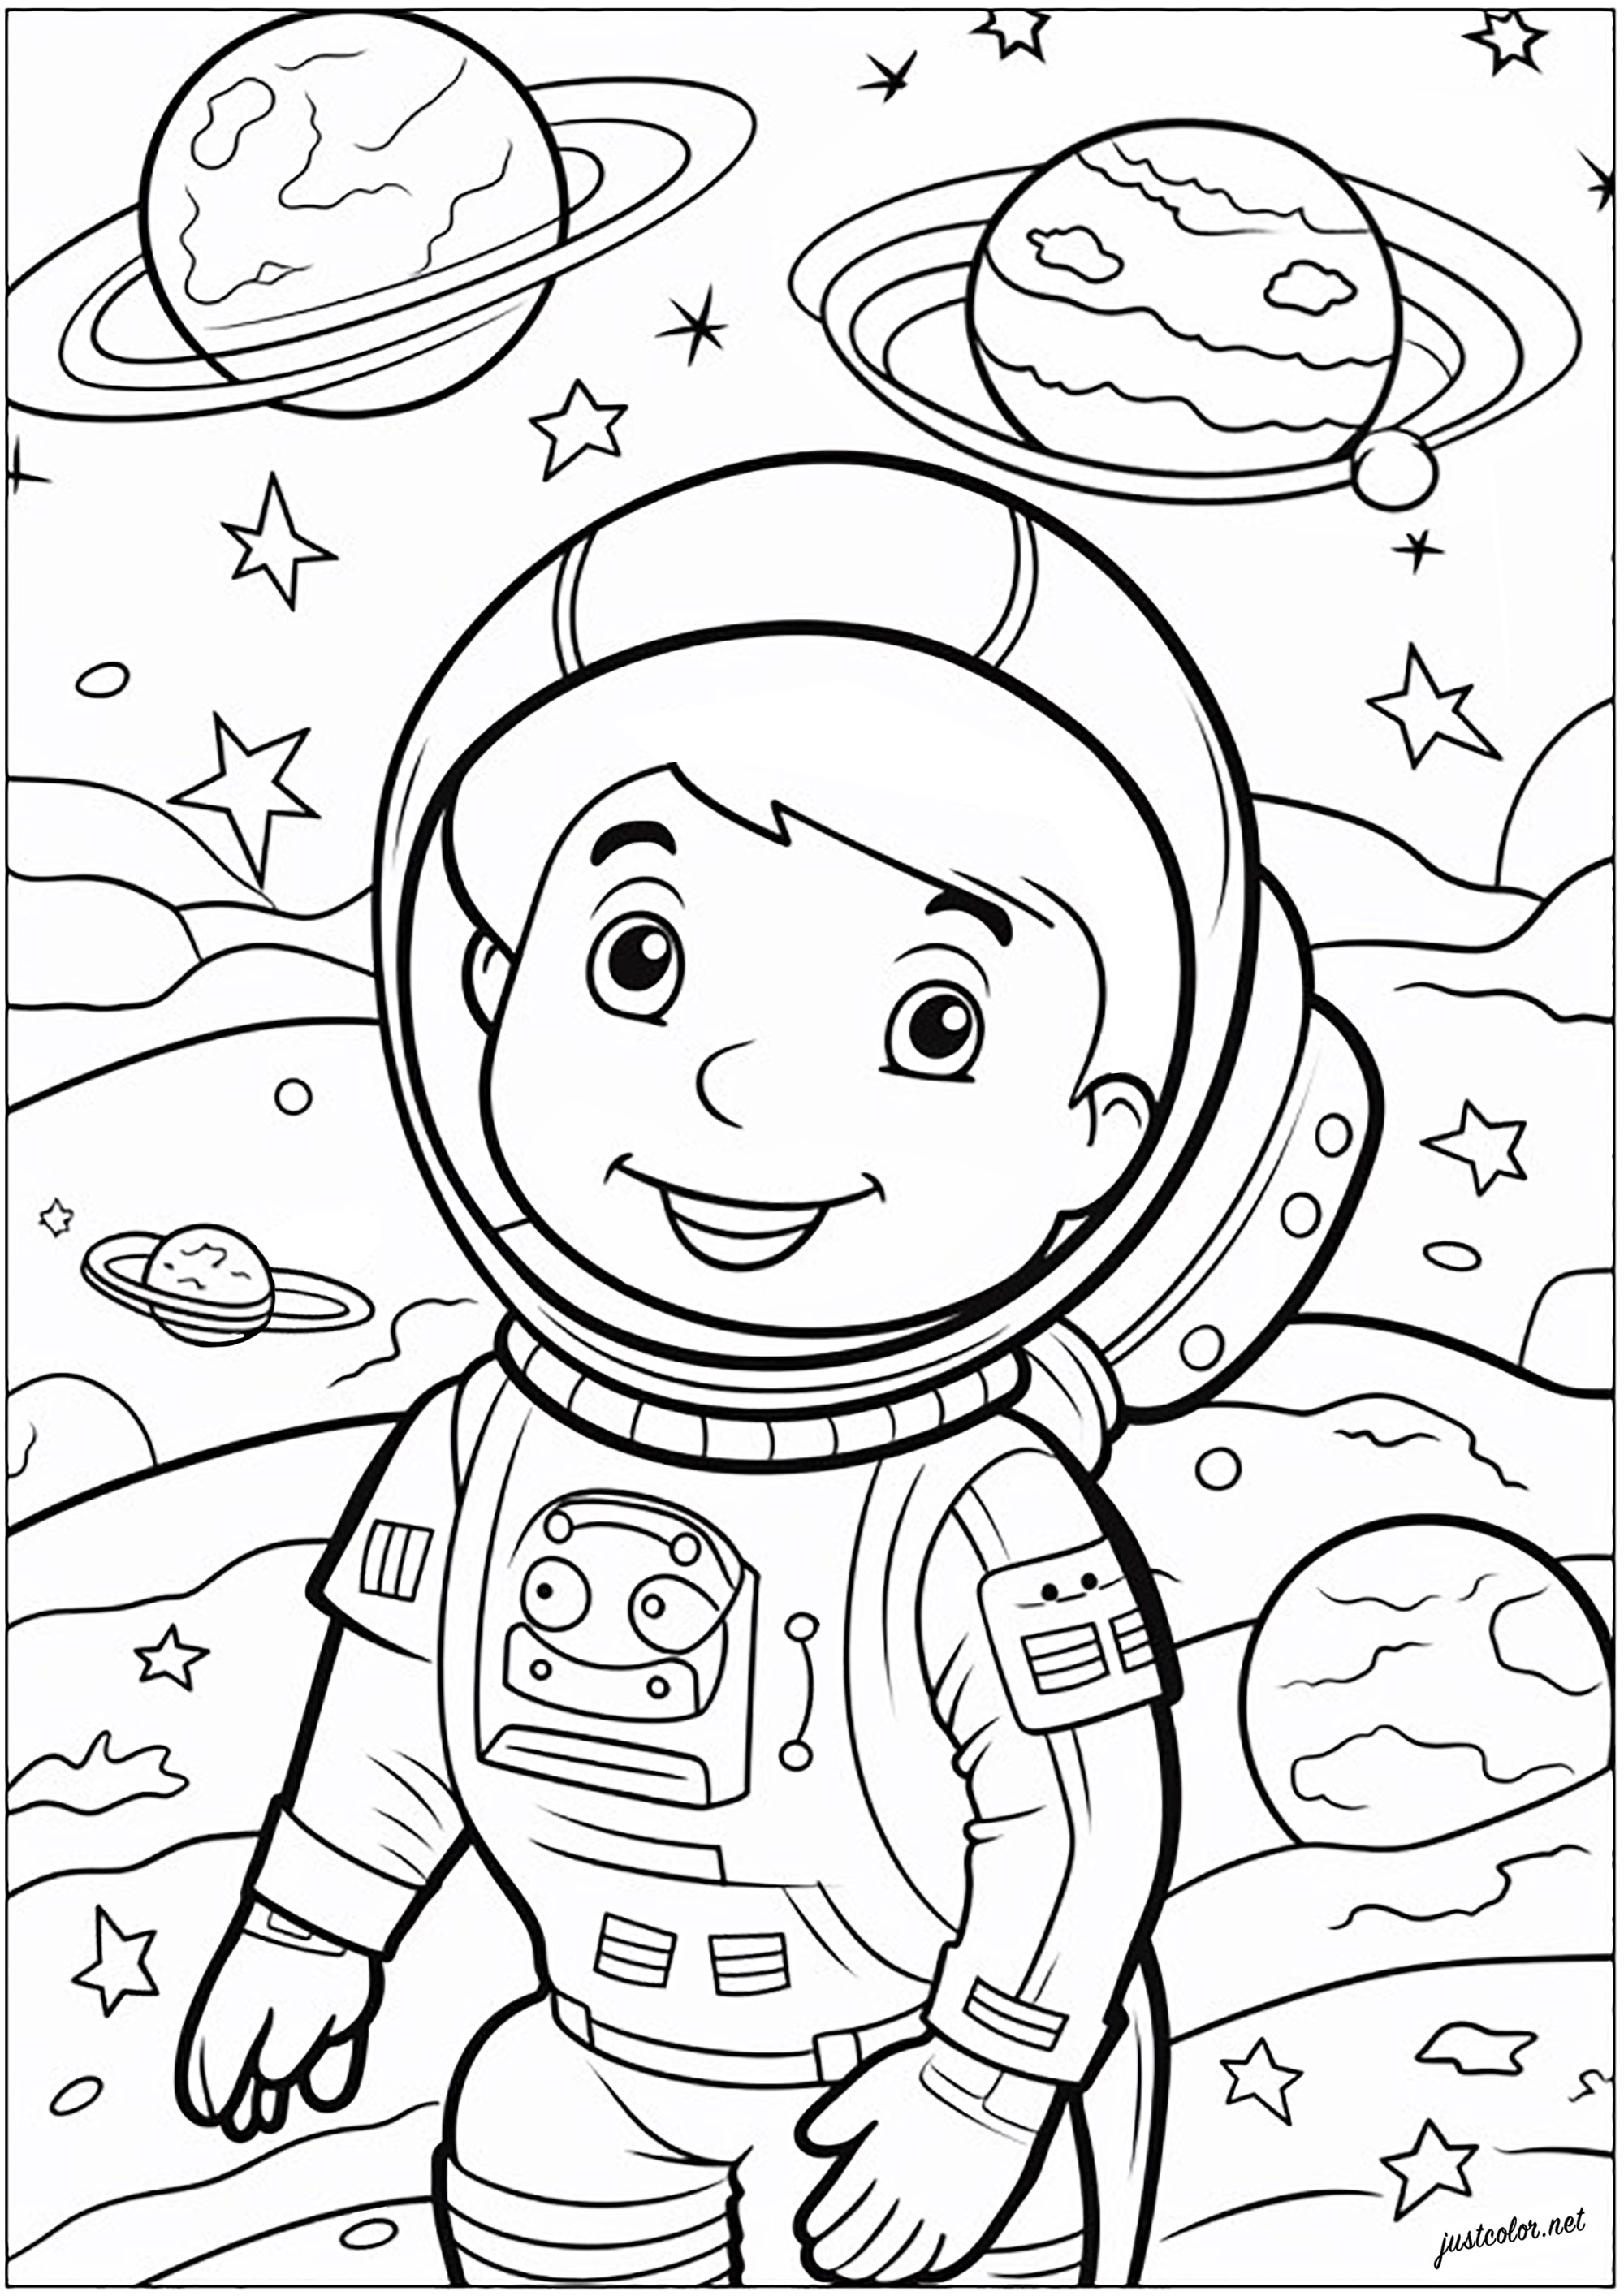 Colorir um pequeno astronauta. Jovem astronauta retratado no espaço, a flutuar entre estrelas e planetas